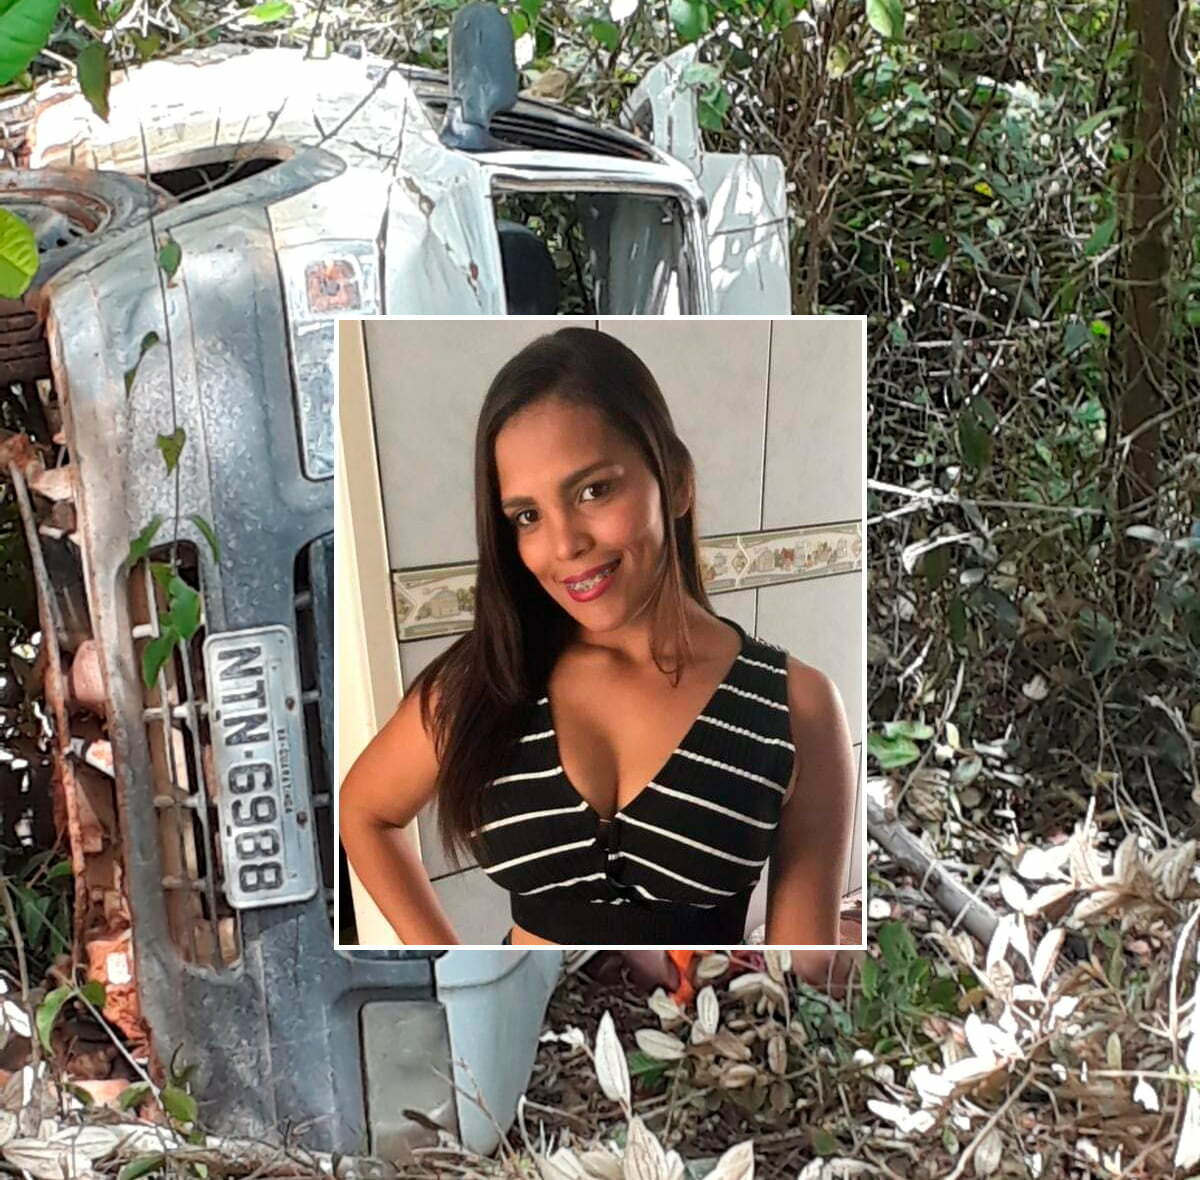 Brenda Ferreira Silva 24 anos morreu vitima de um acidente na estrada de Guaratinga